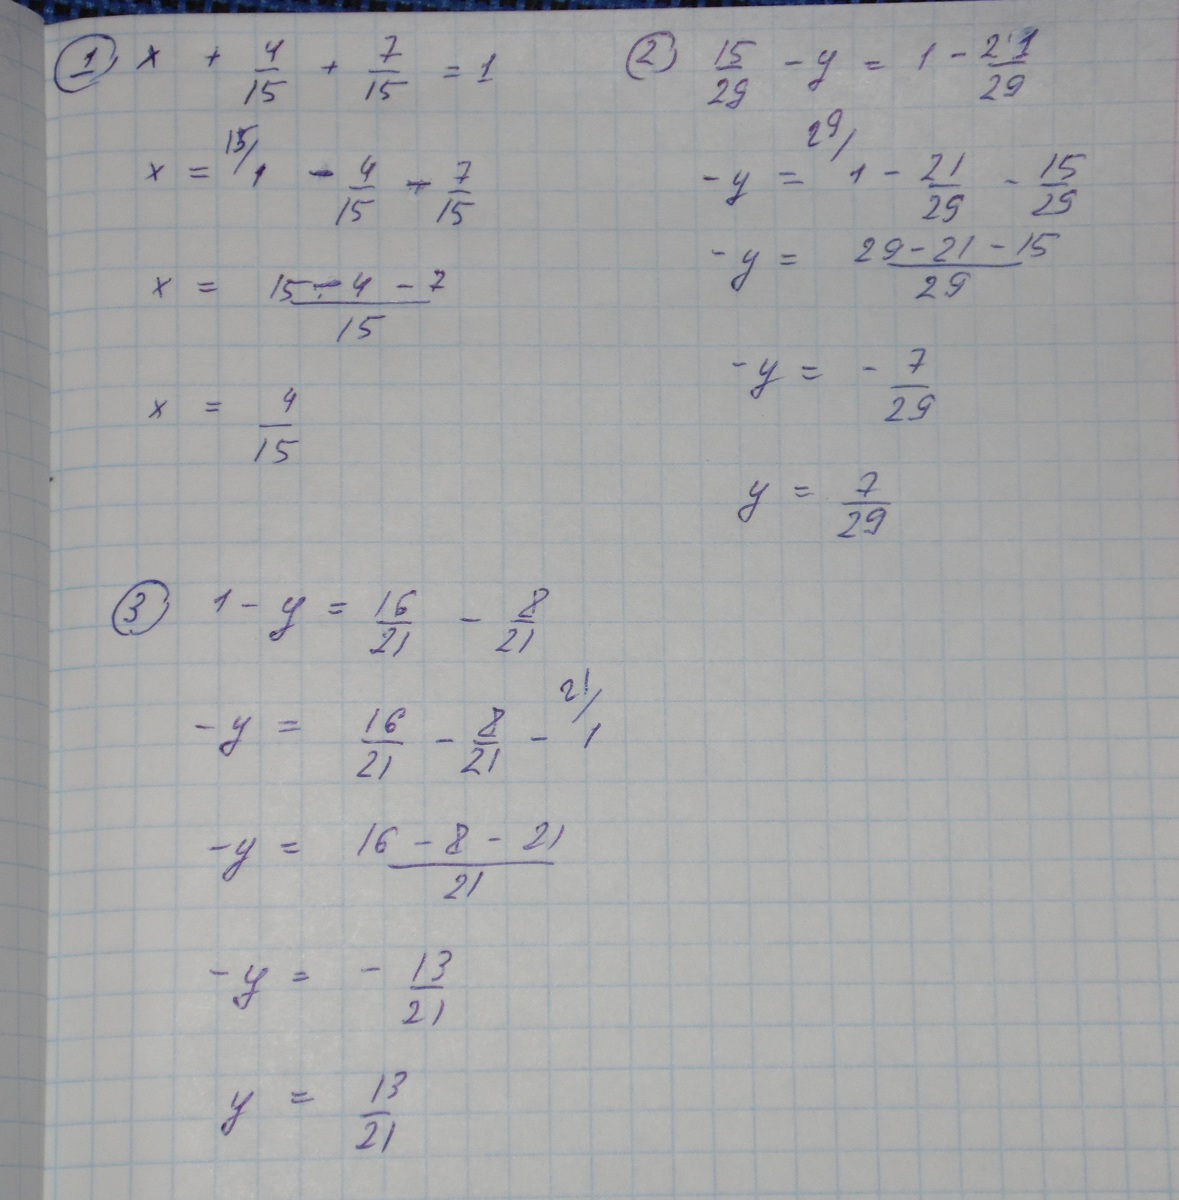 1 7 16 21 ответ. Х:7+15=15. Решение уравнения 15х-8х=21. Решение уравнения 1/4*x=1 1/7. Решение уравнения 16-x=.